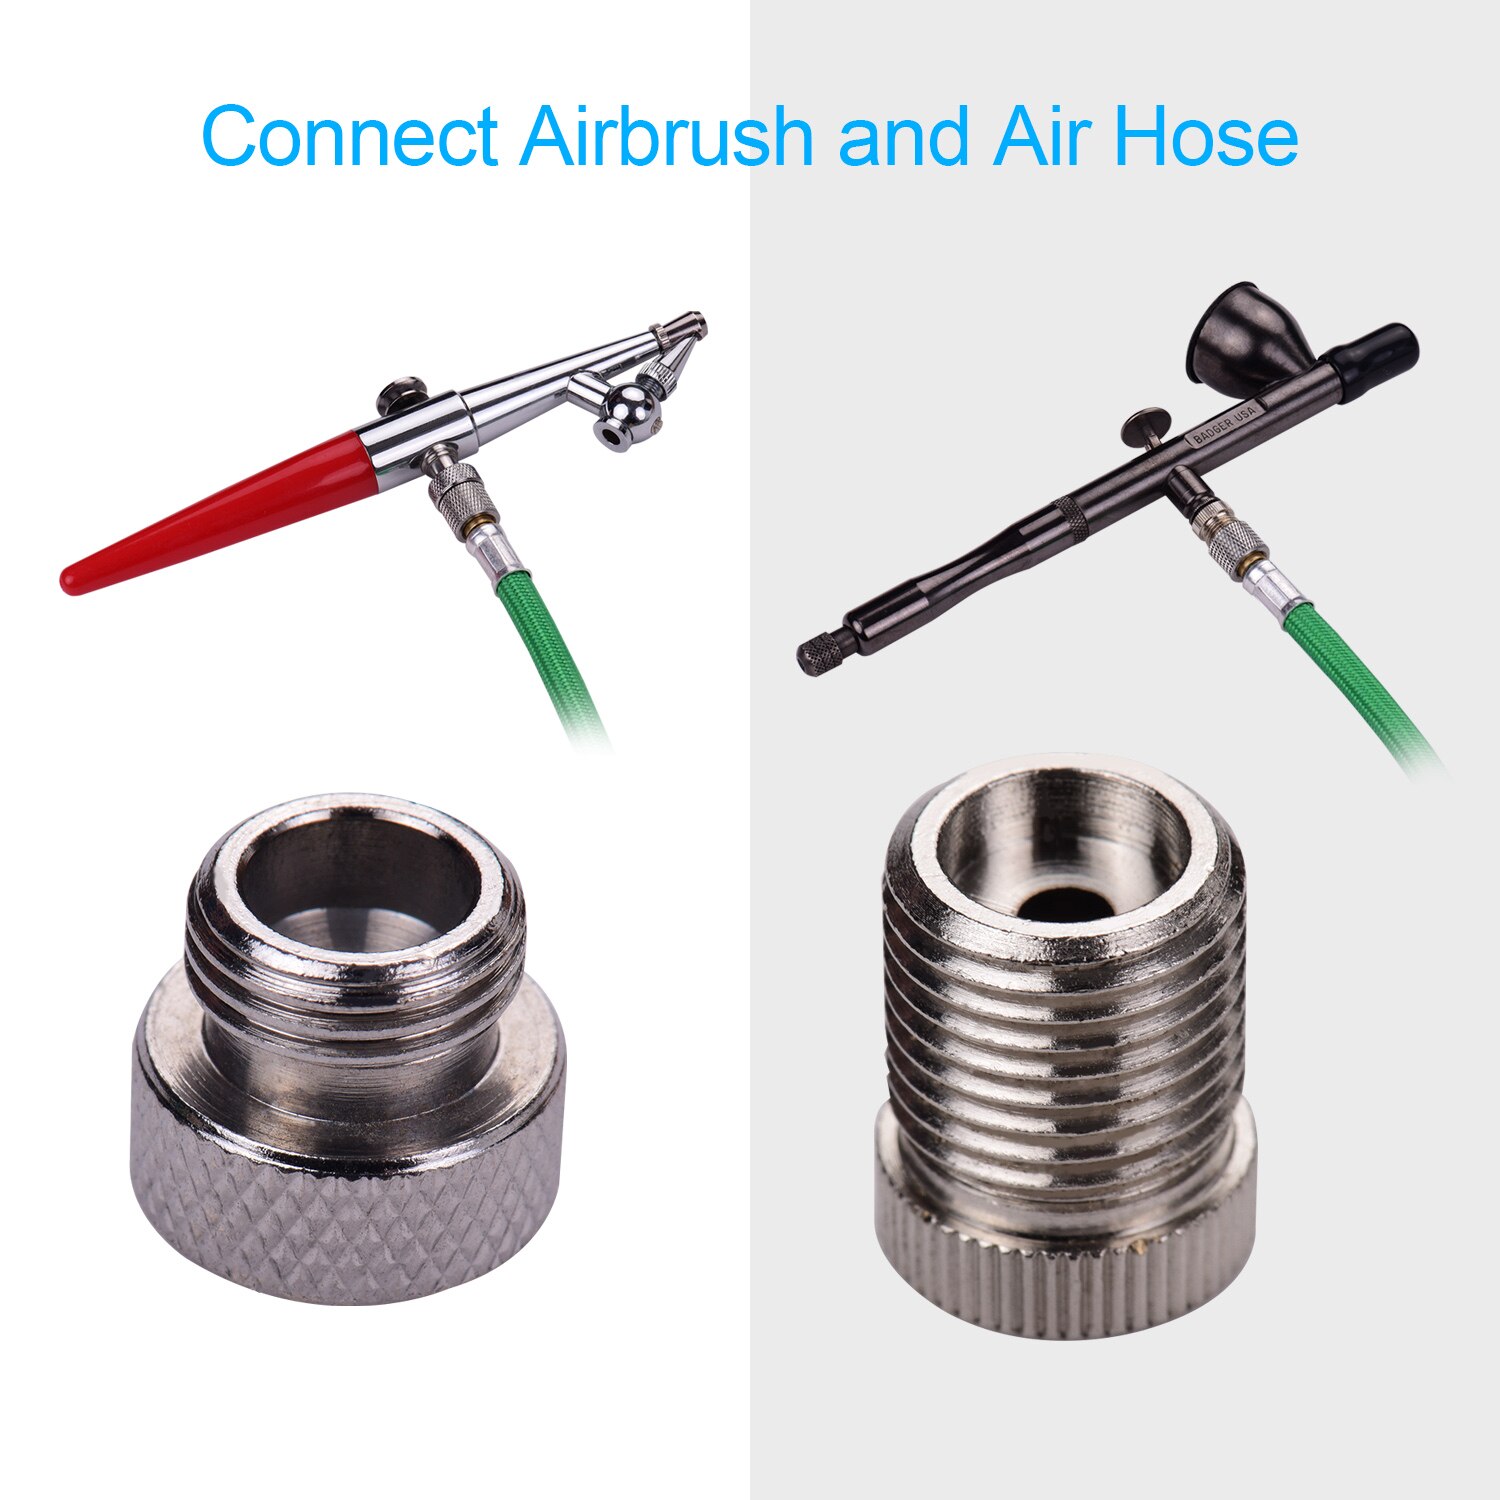 9 stk airbrush adapter kit sæt i flere størrelser tilslutningssæt til airbrush luftslange kompatibel med badger paasche airbrush